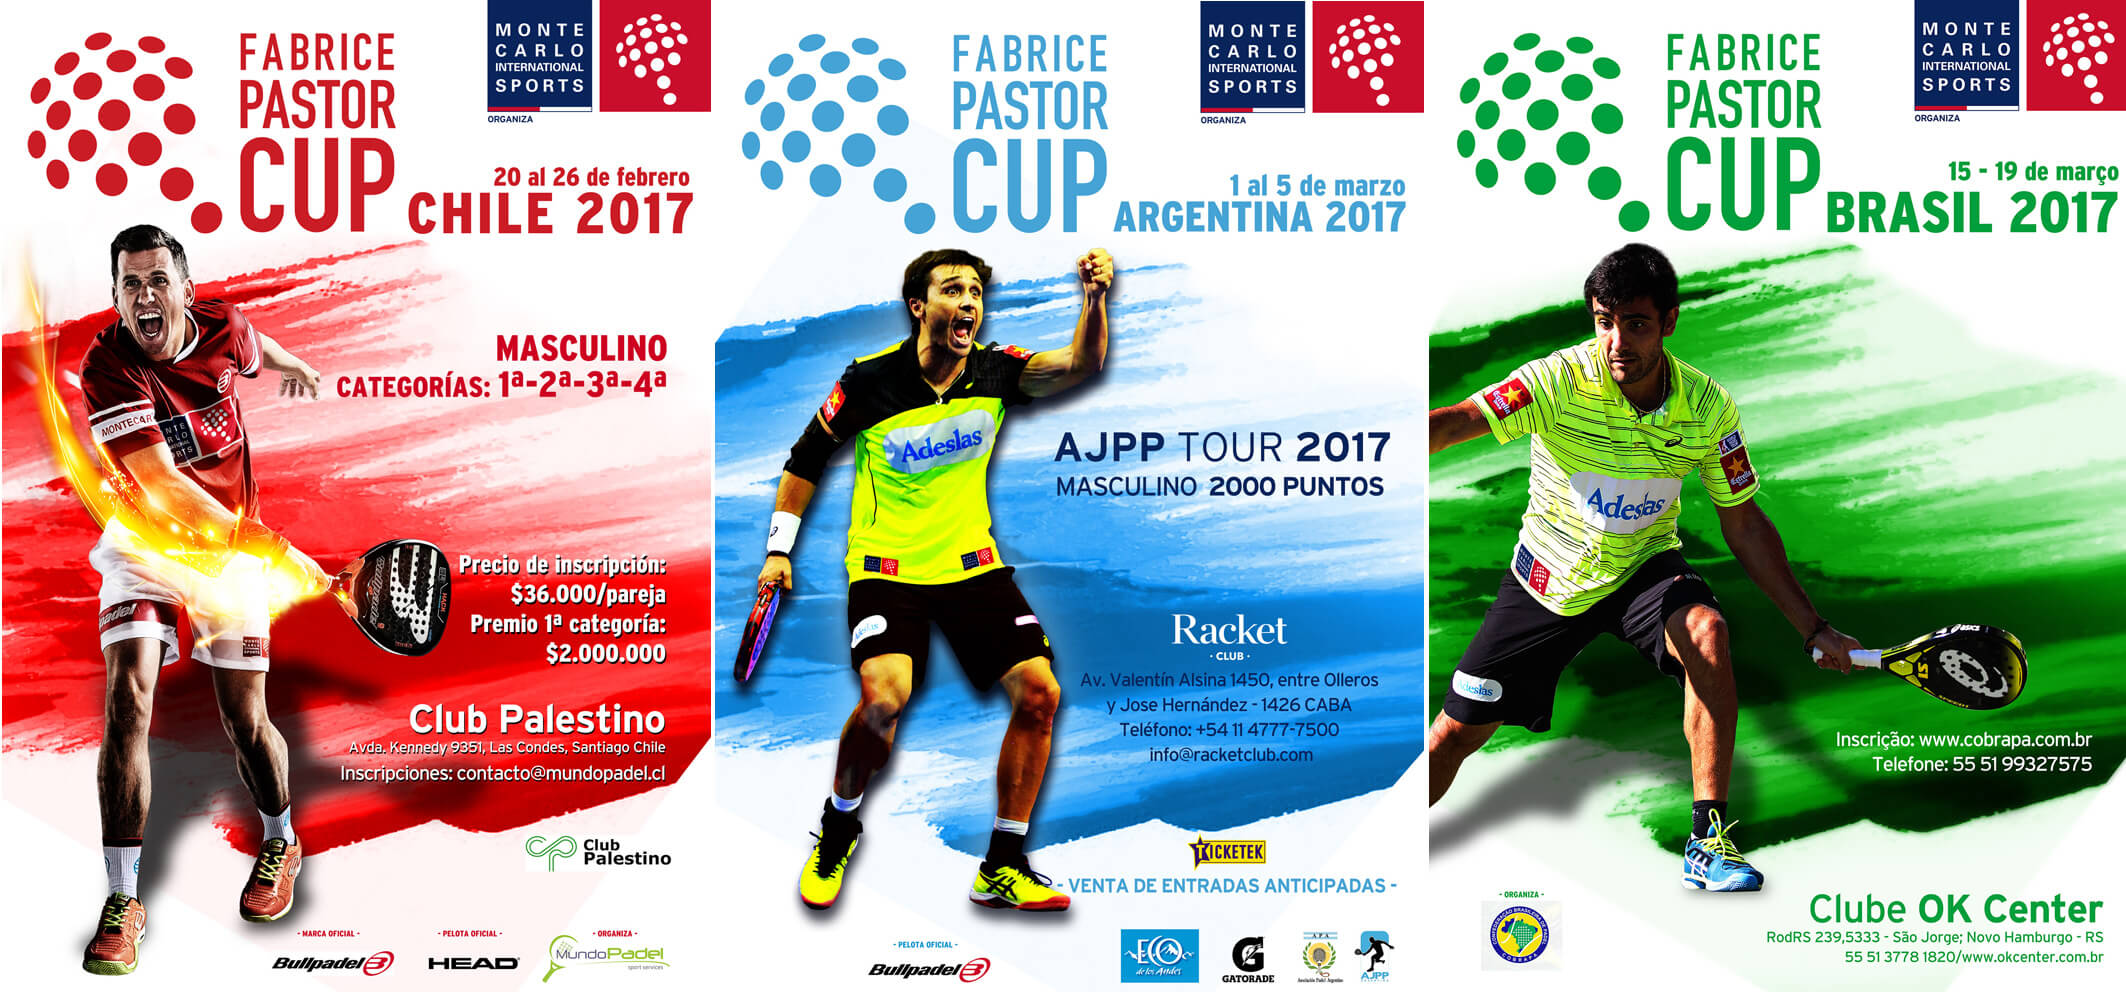 La Fabrice Pastor Cup in Cile, Argentina e Brasile